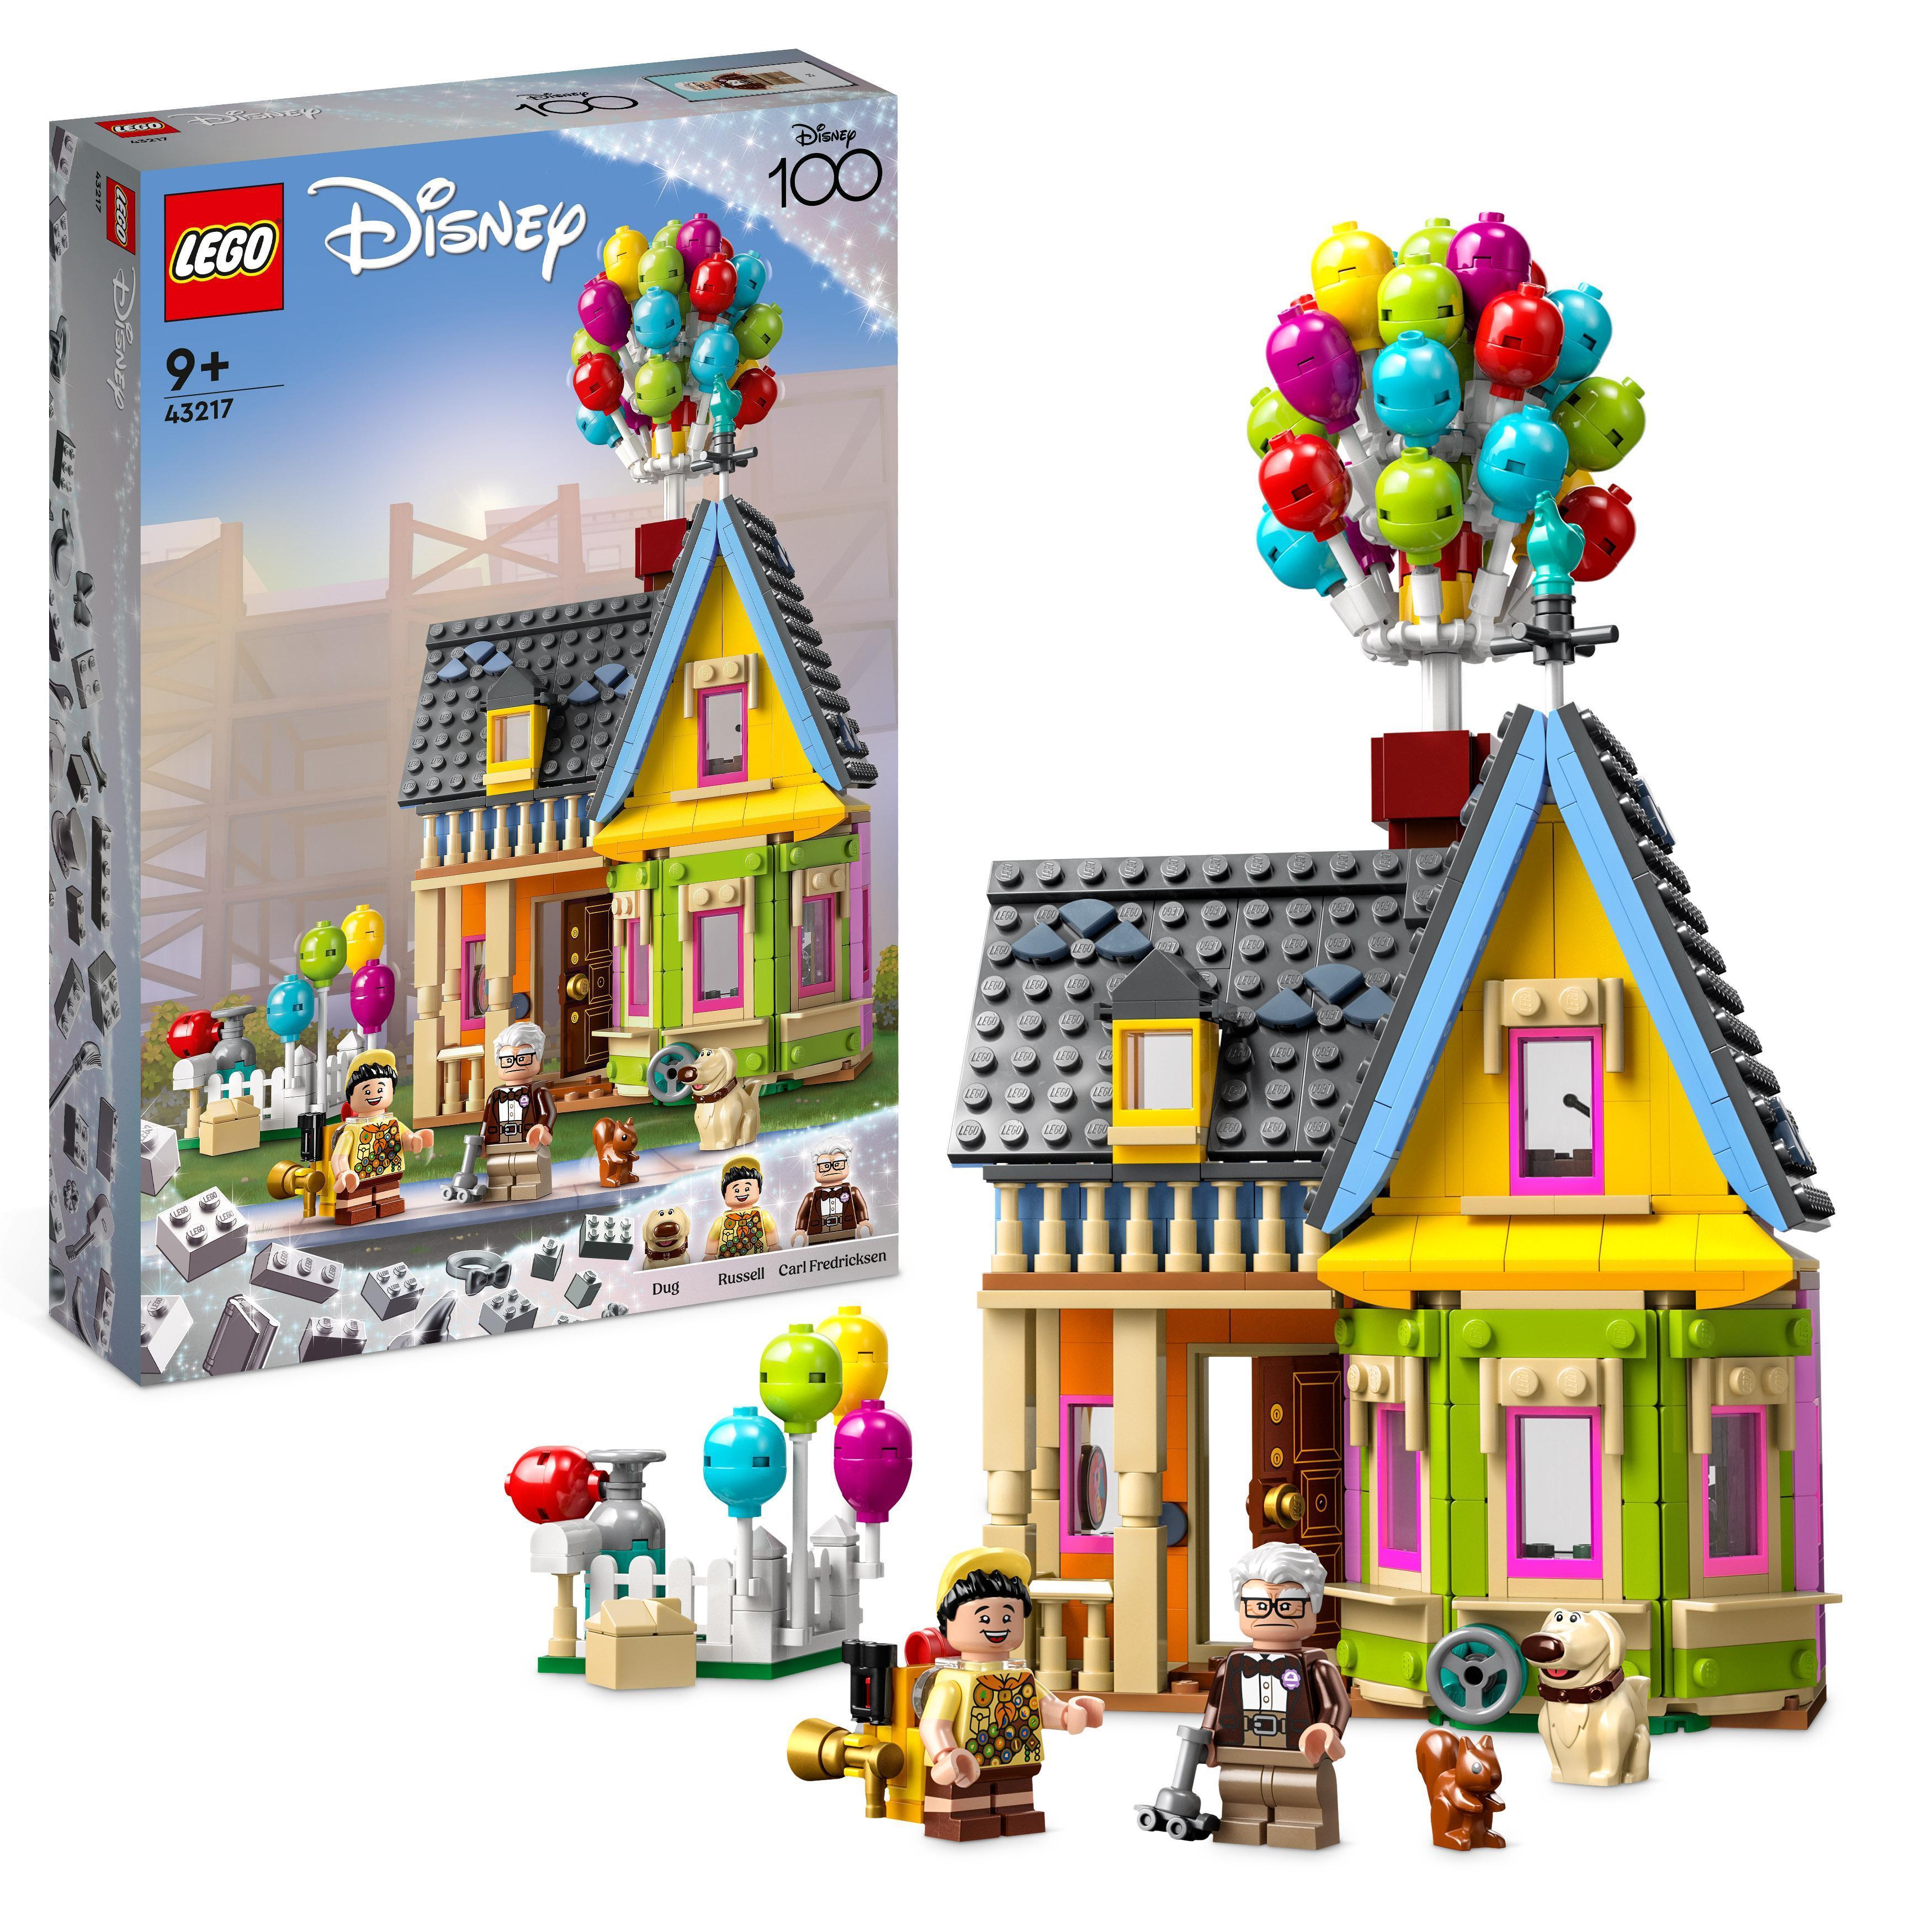 Køb LEGO Disney - Huset "Op" (43217) - Fri fragt